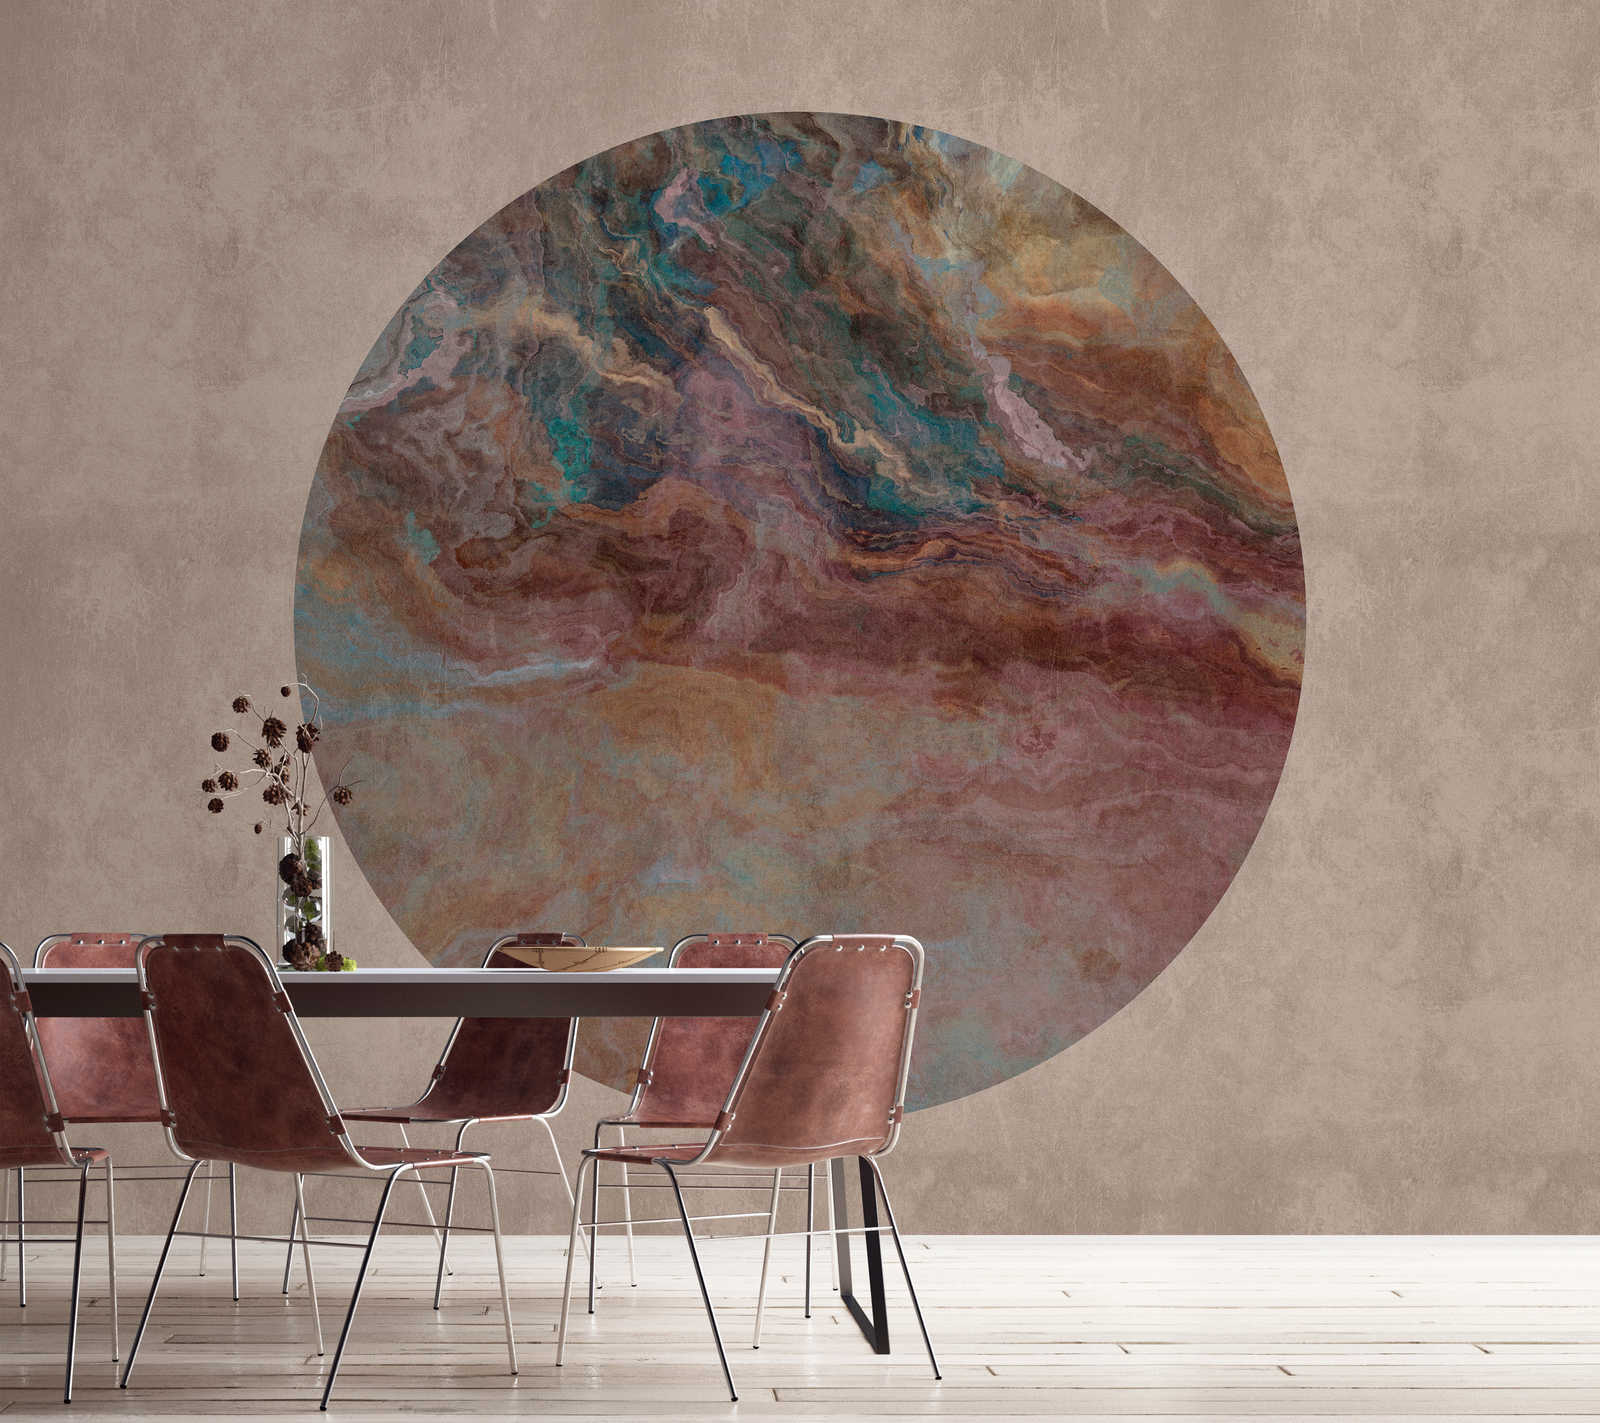             Júpiter 2 - Mural de pared con aspecto de círculo de mármol y yeso
        